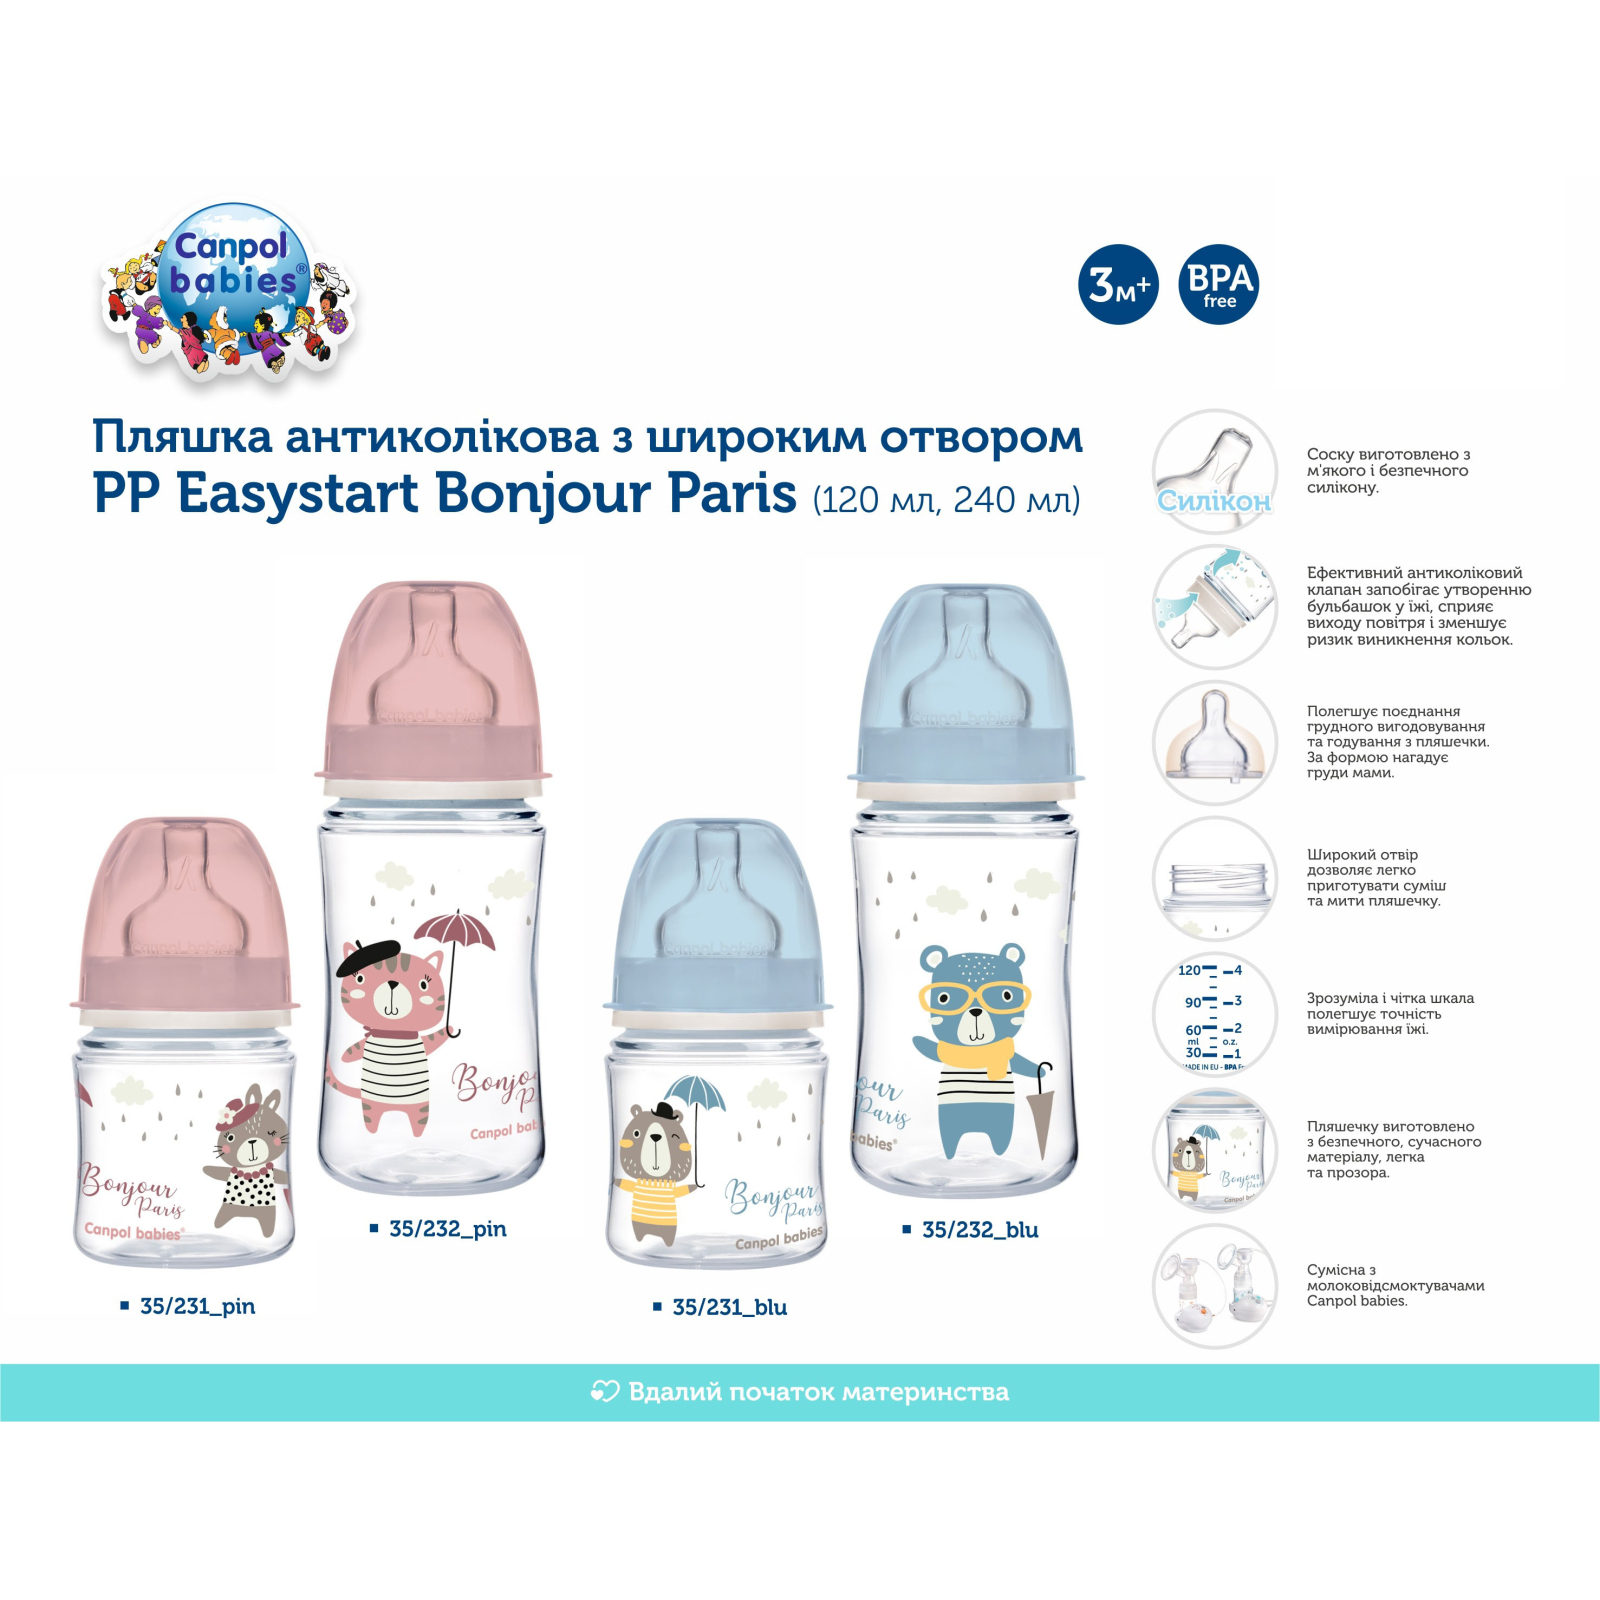 Бутылочка для кормления Canpol babies Bonjour Paris с широким отверстием 240 мл Синяя (35/232_blu) изображение 4